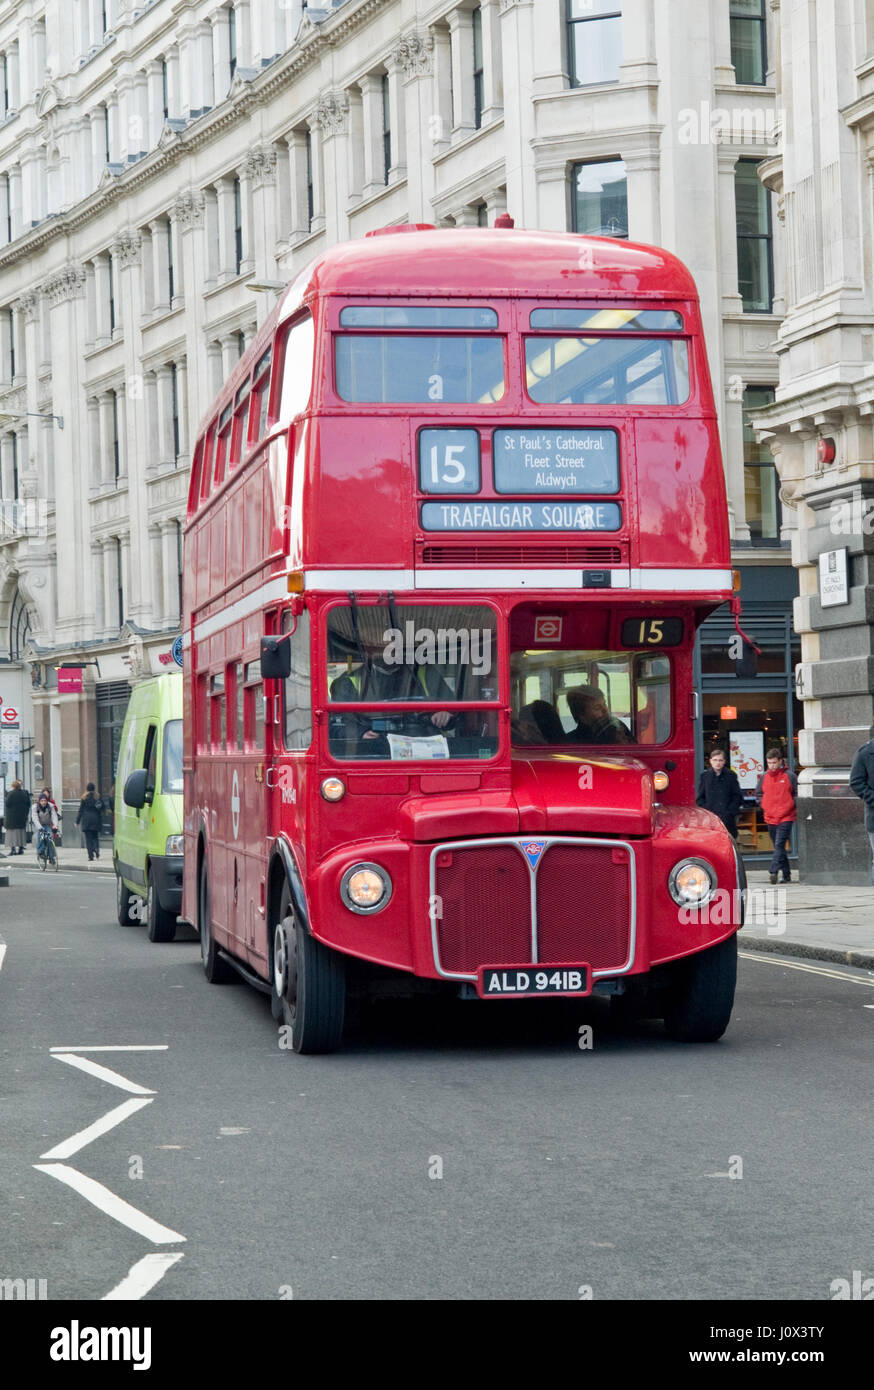 Vintage und ikonische London Transport rote Routemaster-Bus noch auf Erbe Buslinien im Zentrum von London, eine touristische Attraktion in Betrieb. Stockfoto